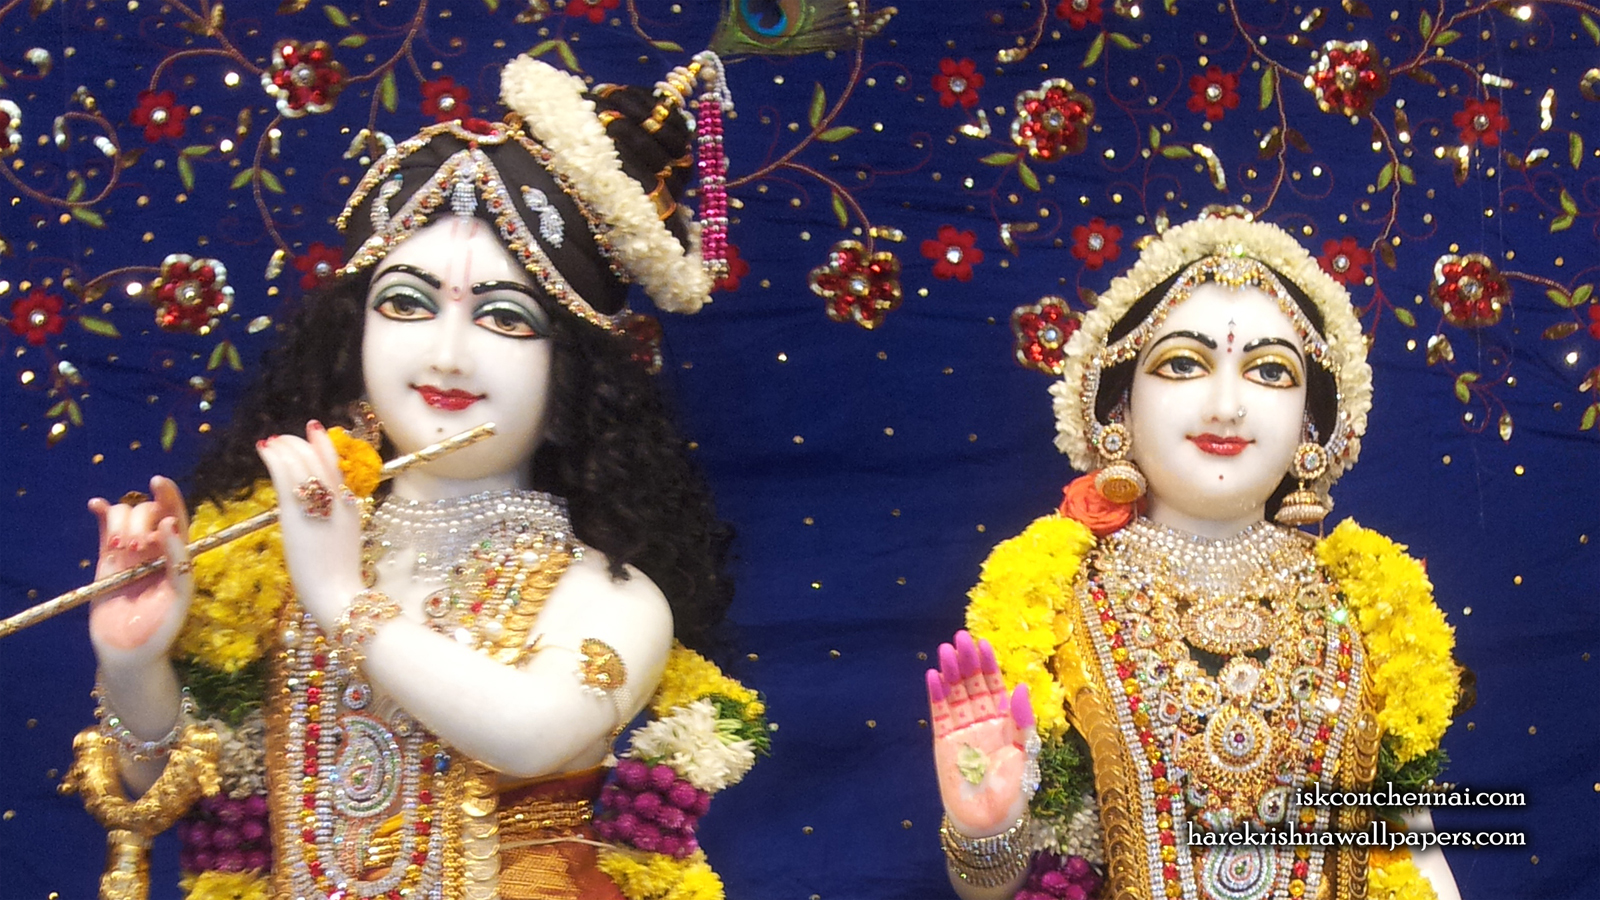 Sri Sri Radha Krishna Close up Wallpaper (002) Size 1600x900 Download